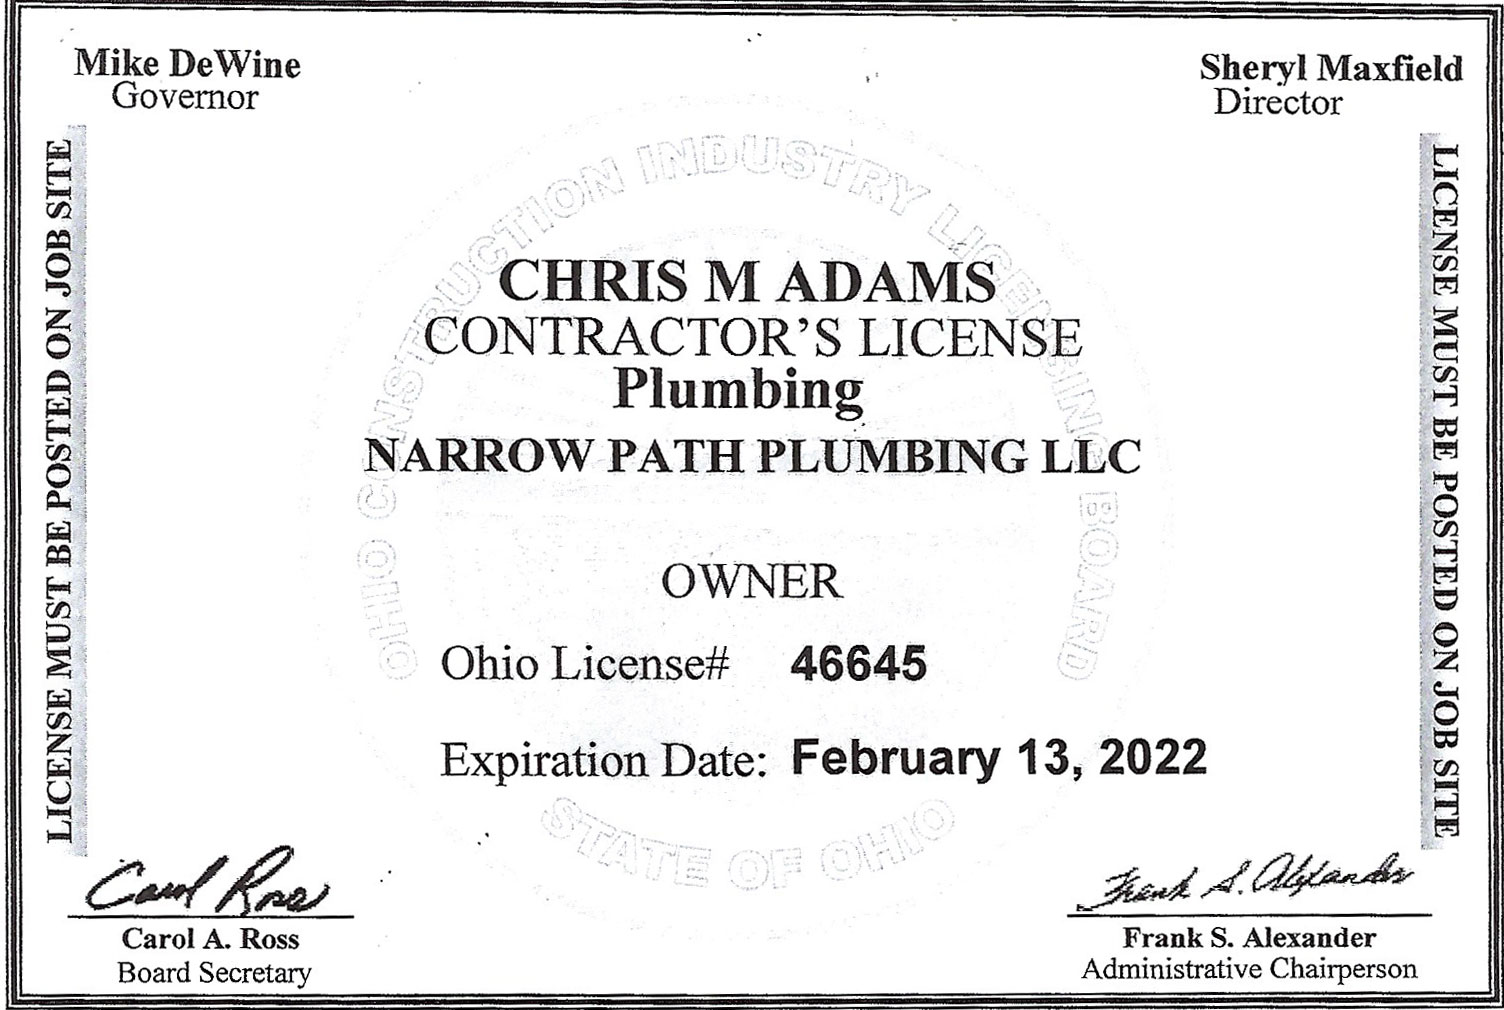 Plumbing Contractor's License